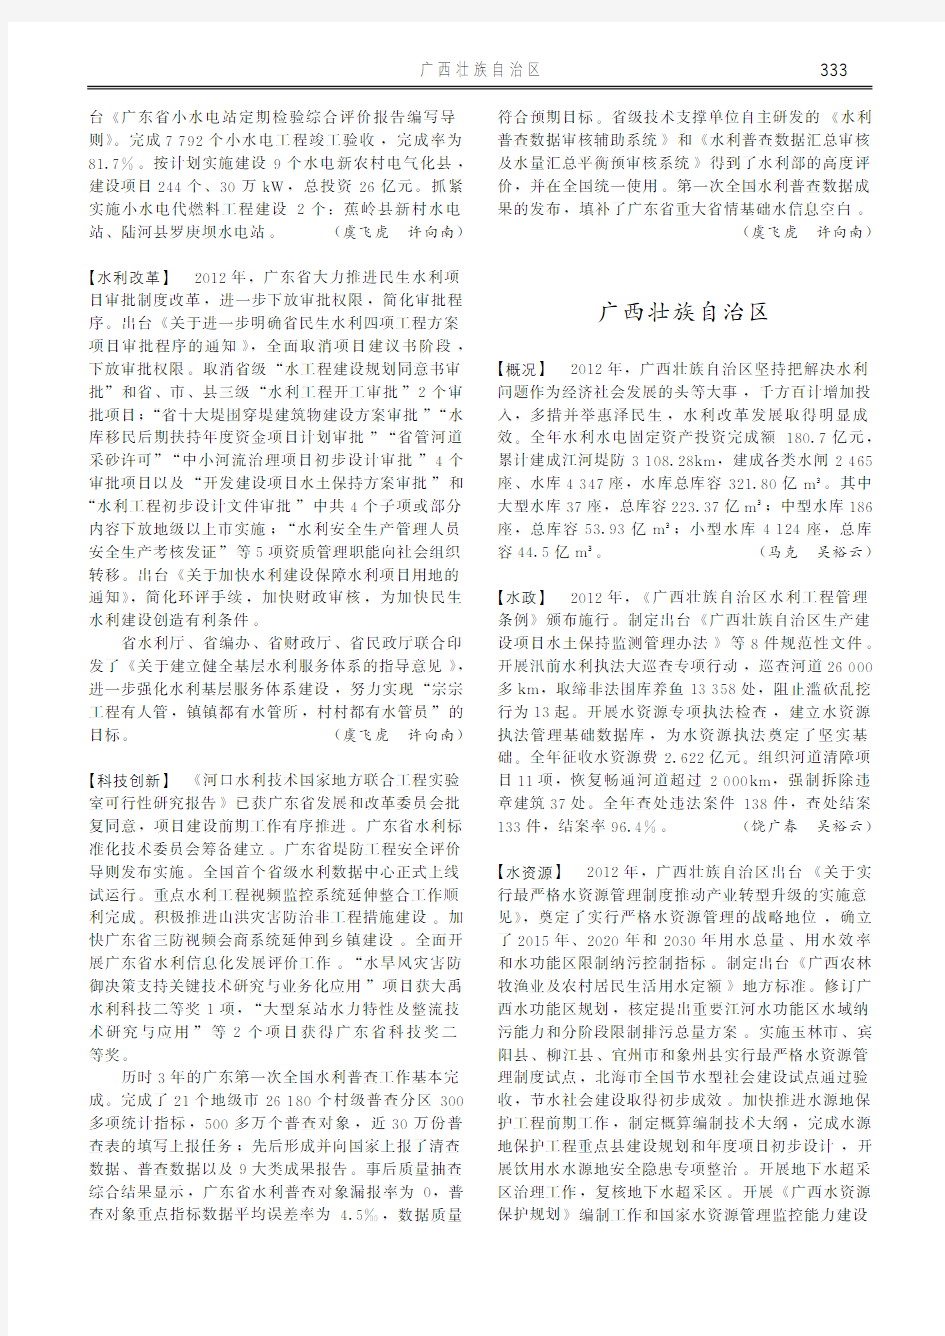 中国水利年鉴2013_地方水利-广西壮族自治区-【概况】